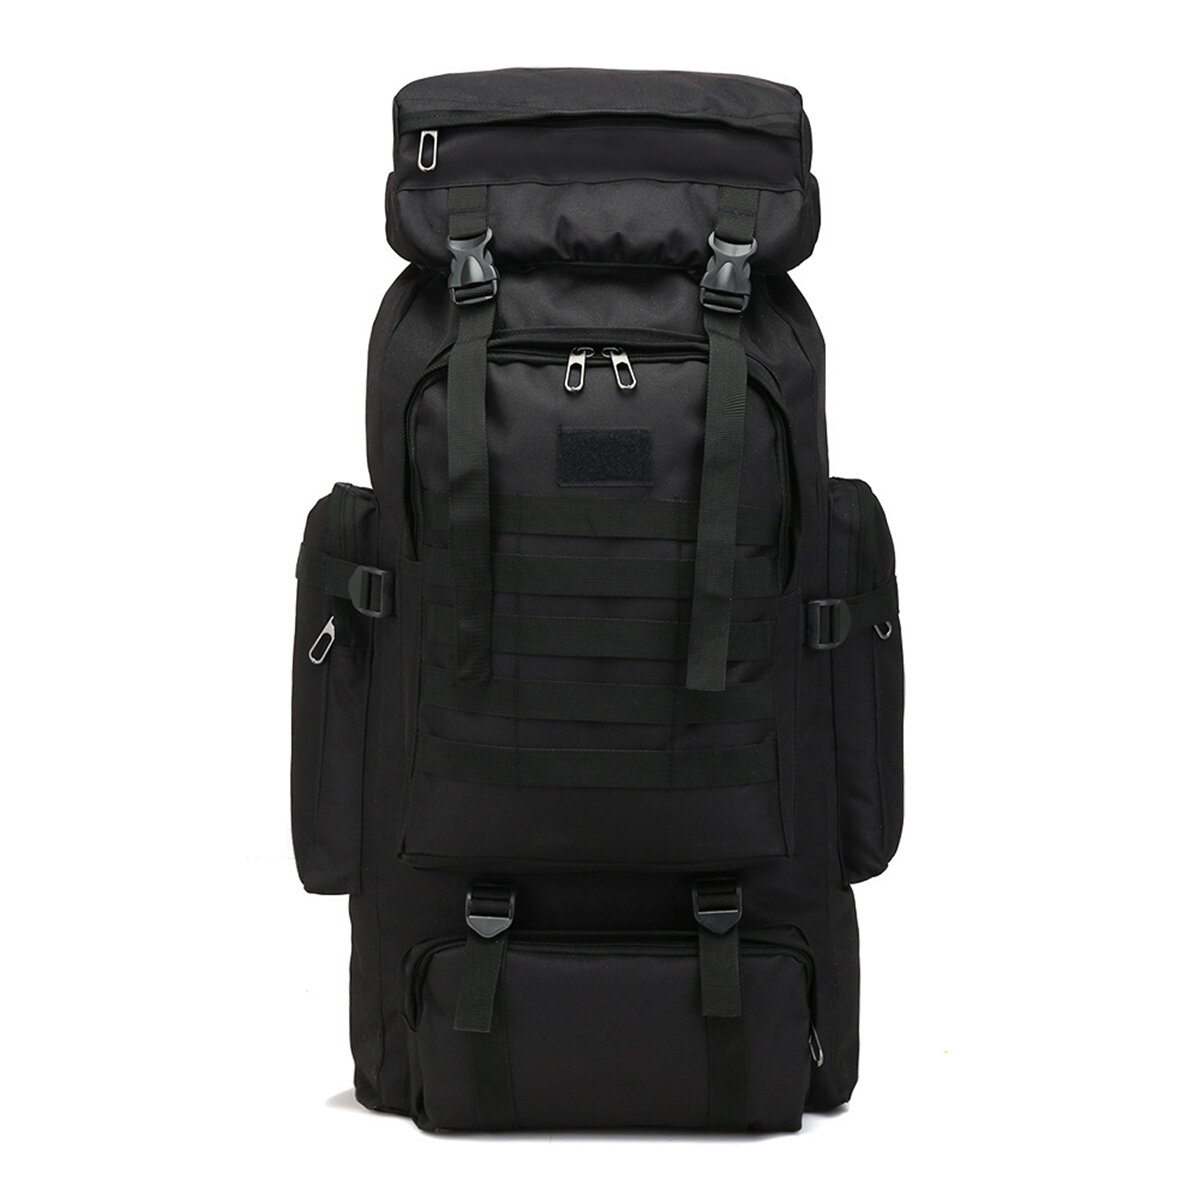 Plecak 80L Outdoor Military Rucksacks Tactical Bag z EU za $19.99 / ~77zł